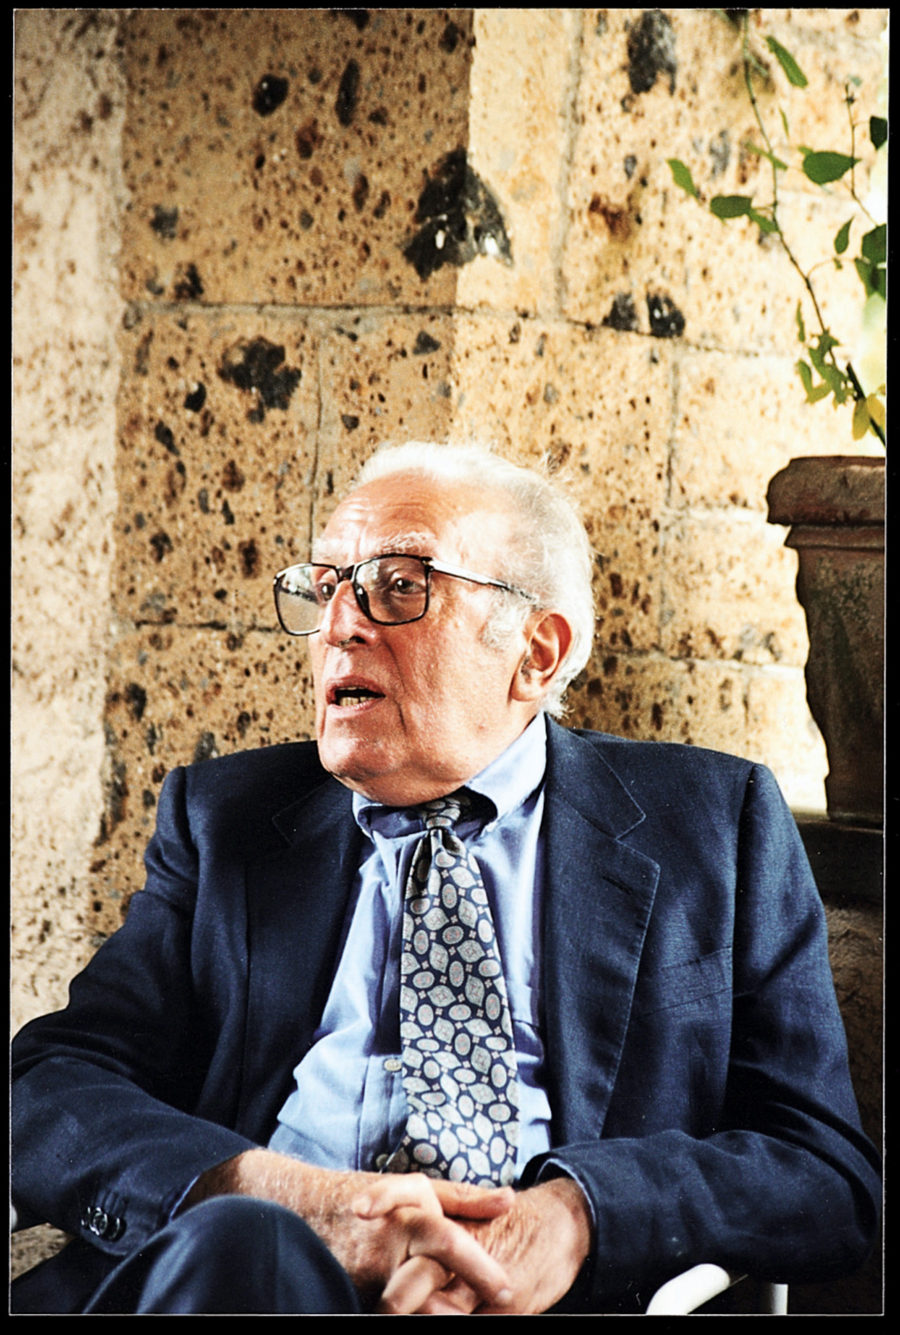 Luigi Malerba, author